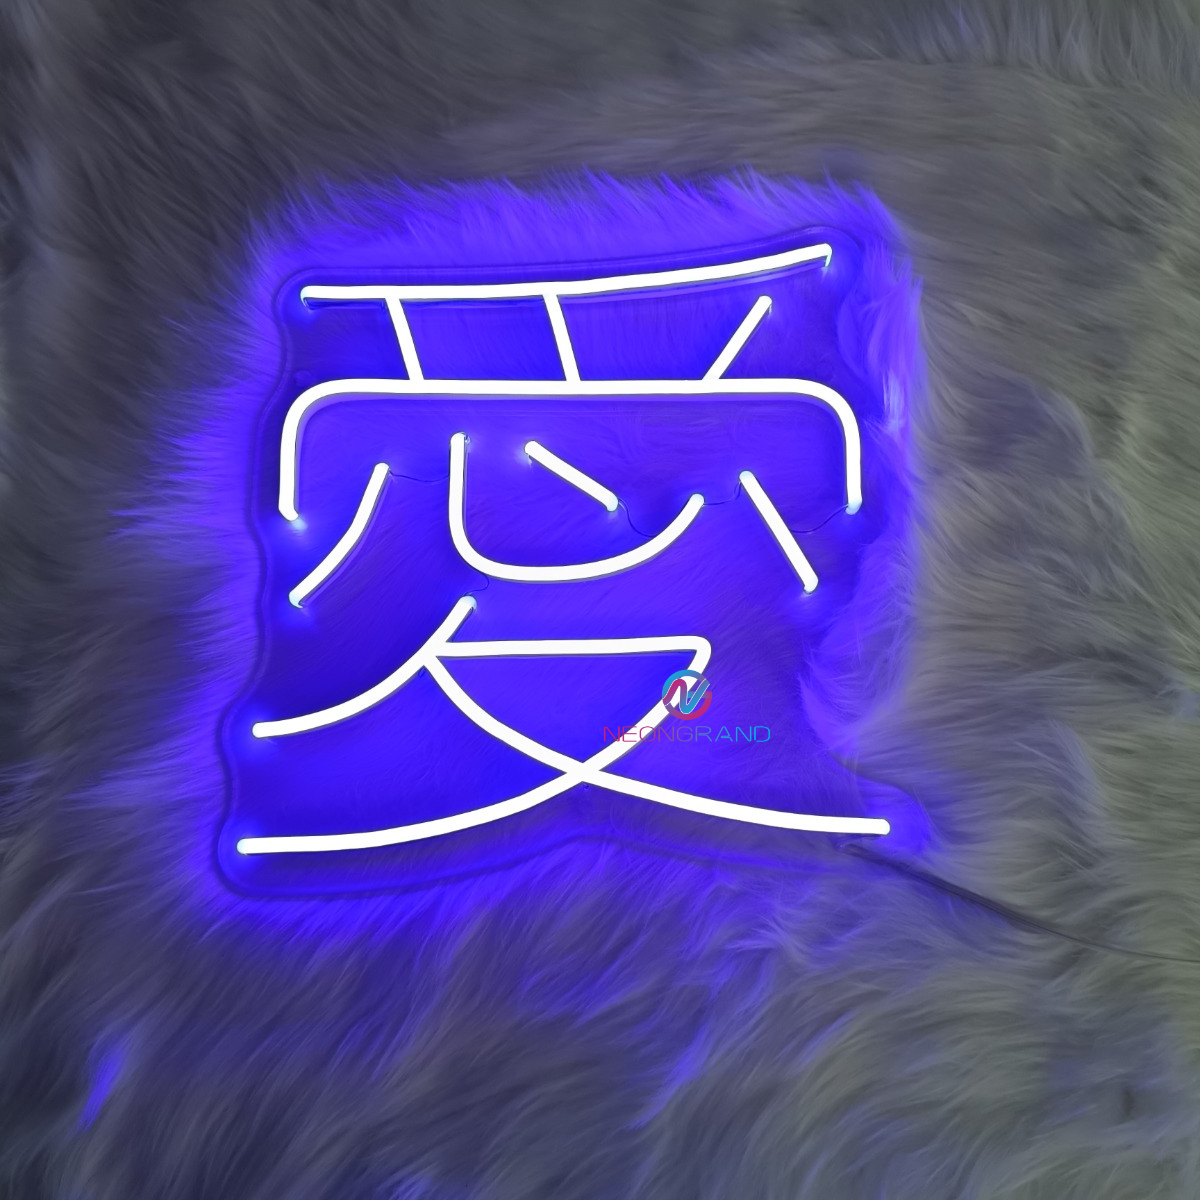 Japanese Neon Lights Love Letter Neon Sign